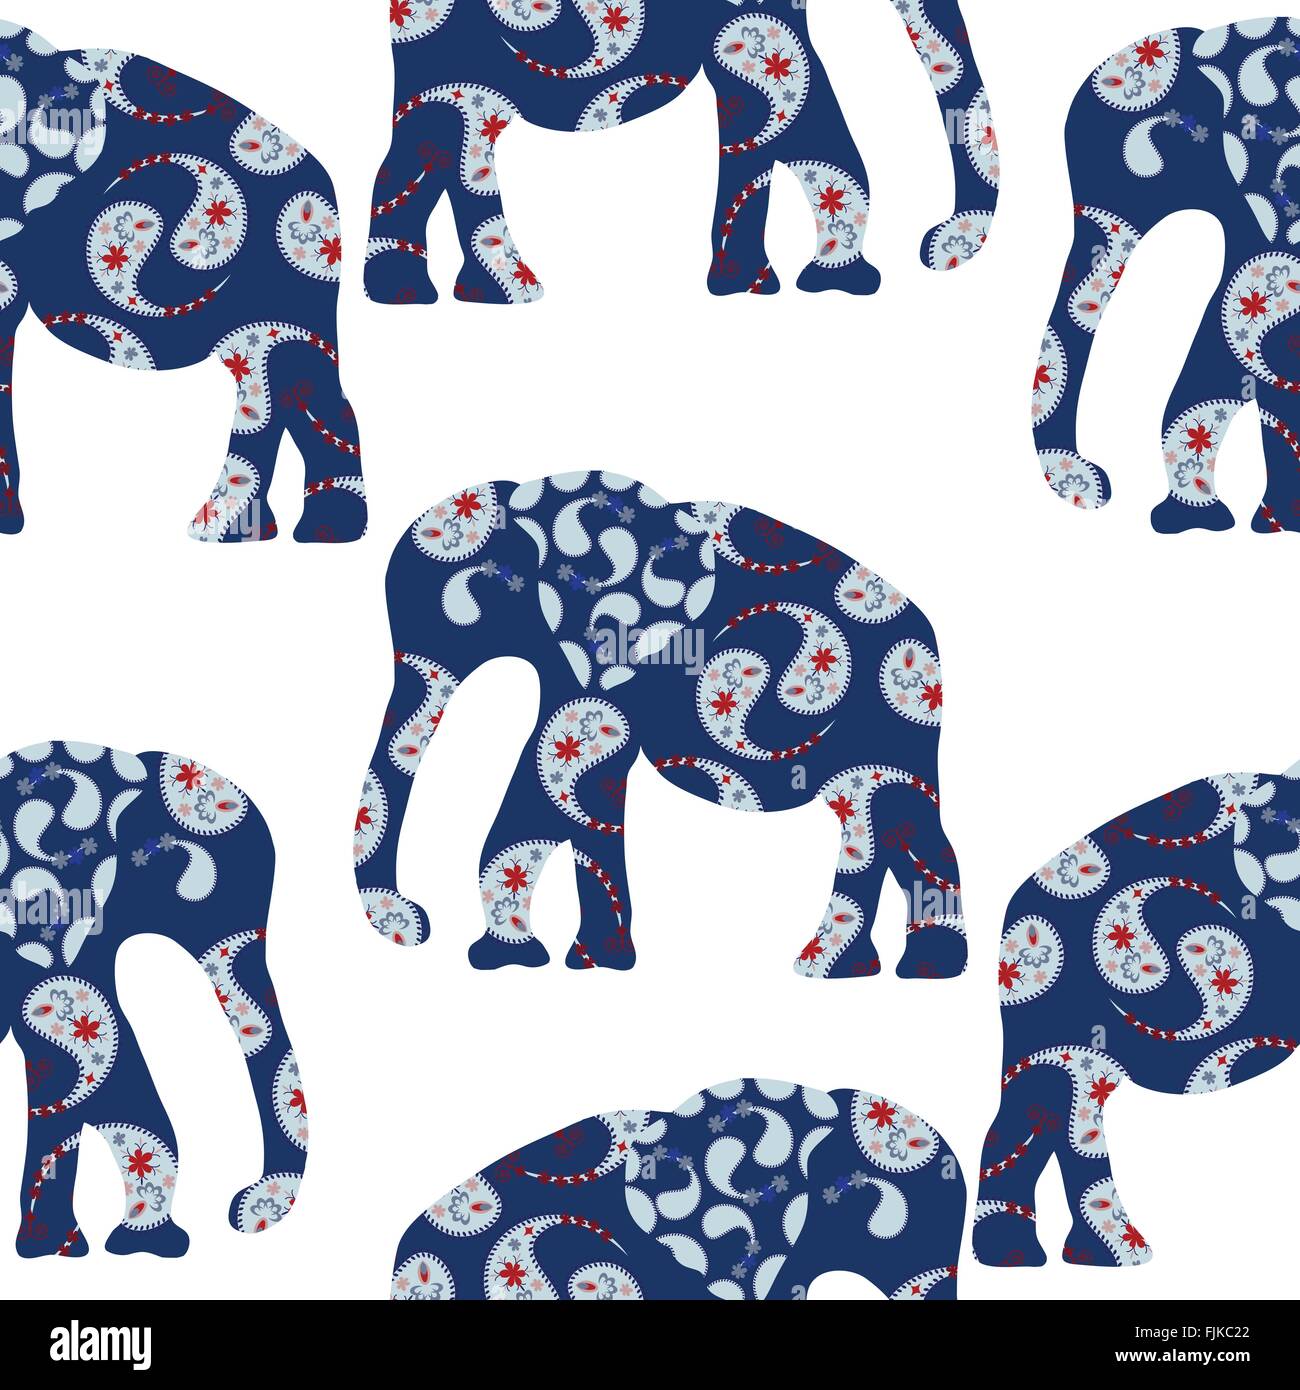 Caricature décoratif lumineux homogène et uniforme de l'éléphant motif Motif dans le menu vecteur, swatch Illustration de Vecteur